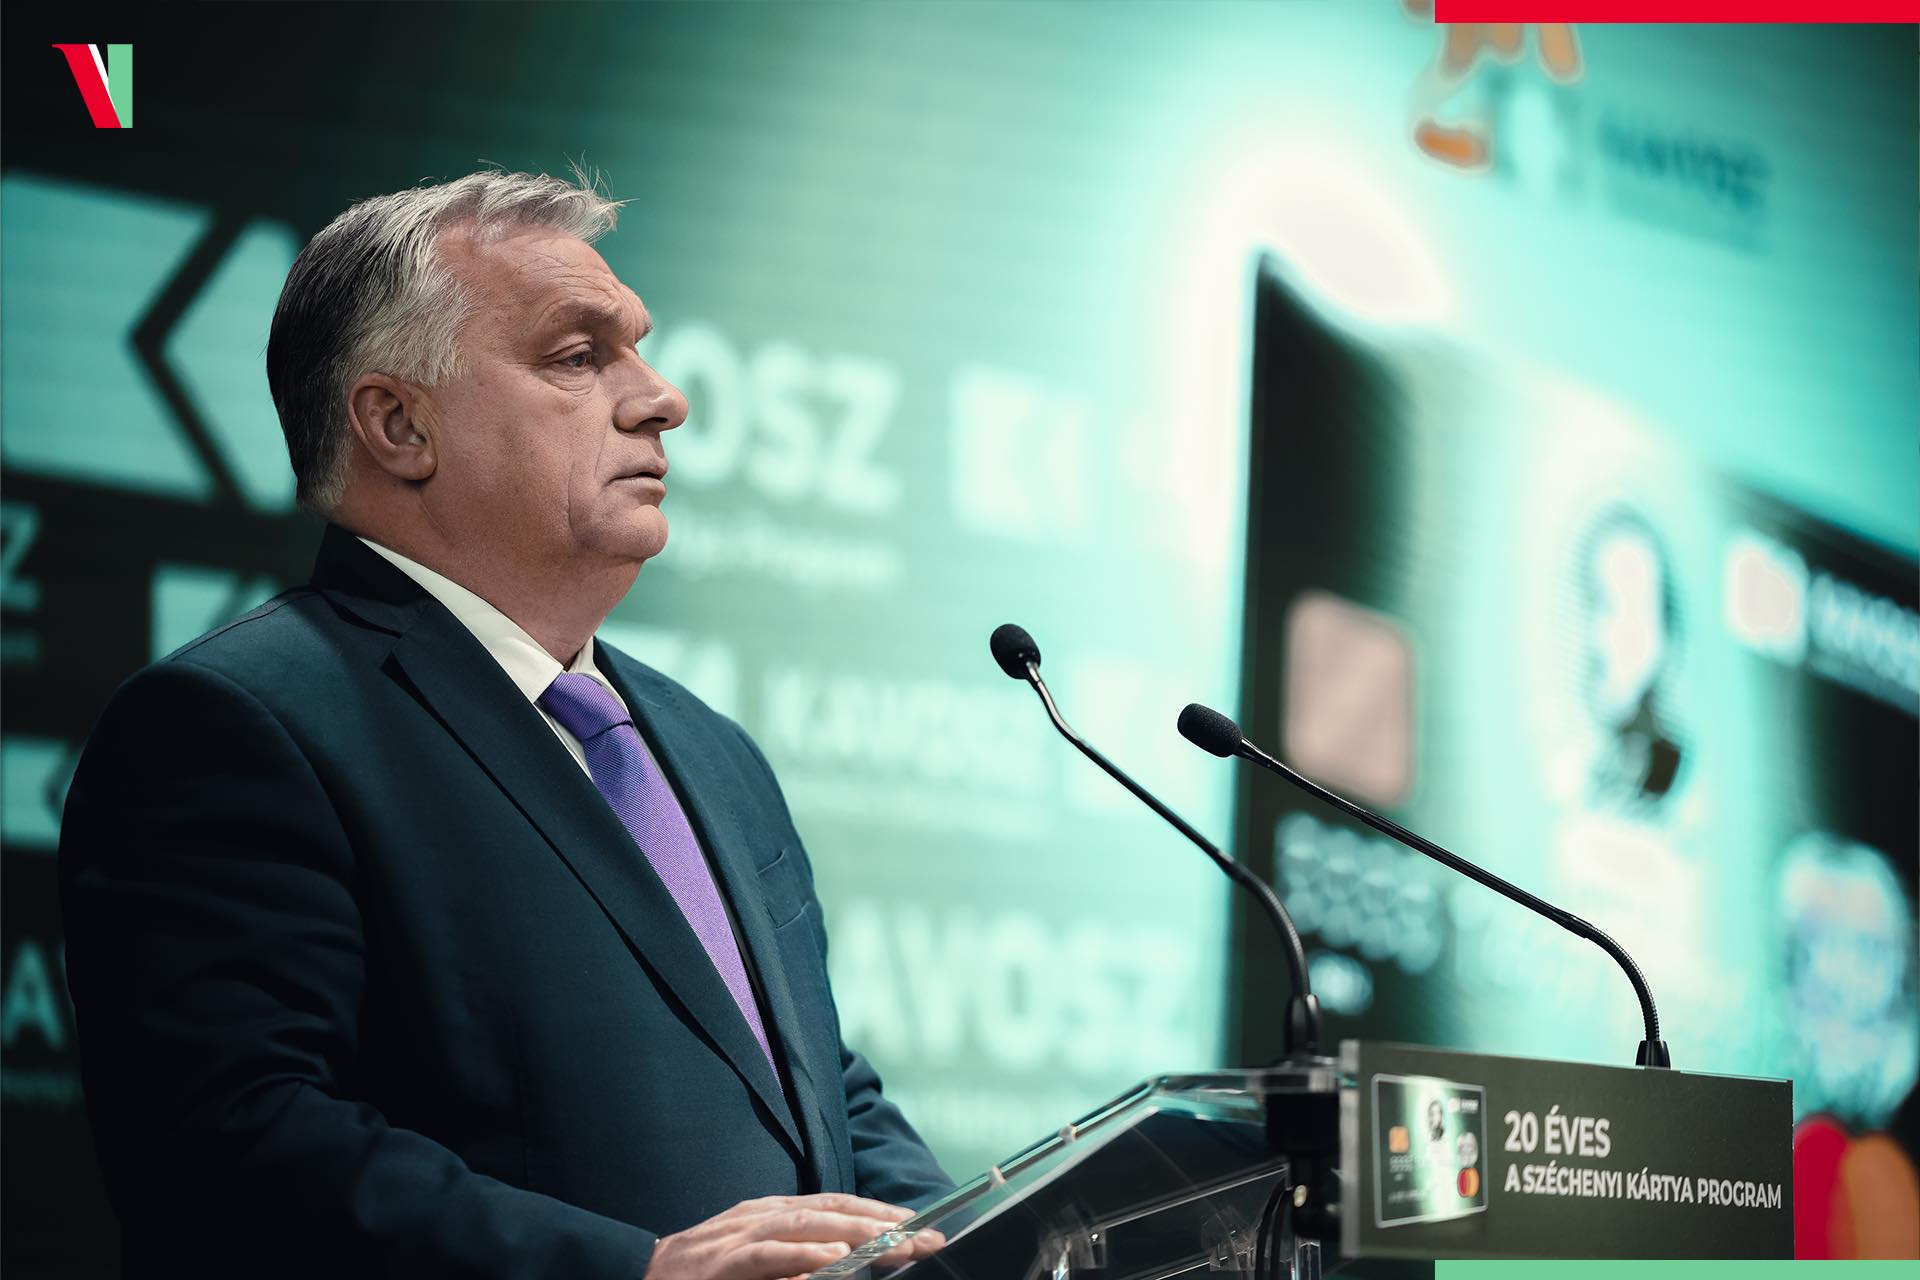 Rozhovor Viktora Orbána pro Radio Kossuth "Dobré ráno, Maďarsko!" v jeho show